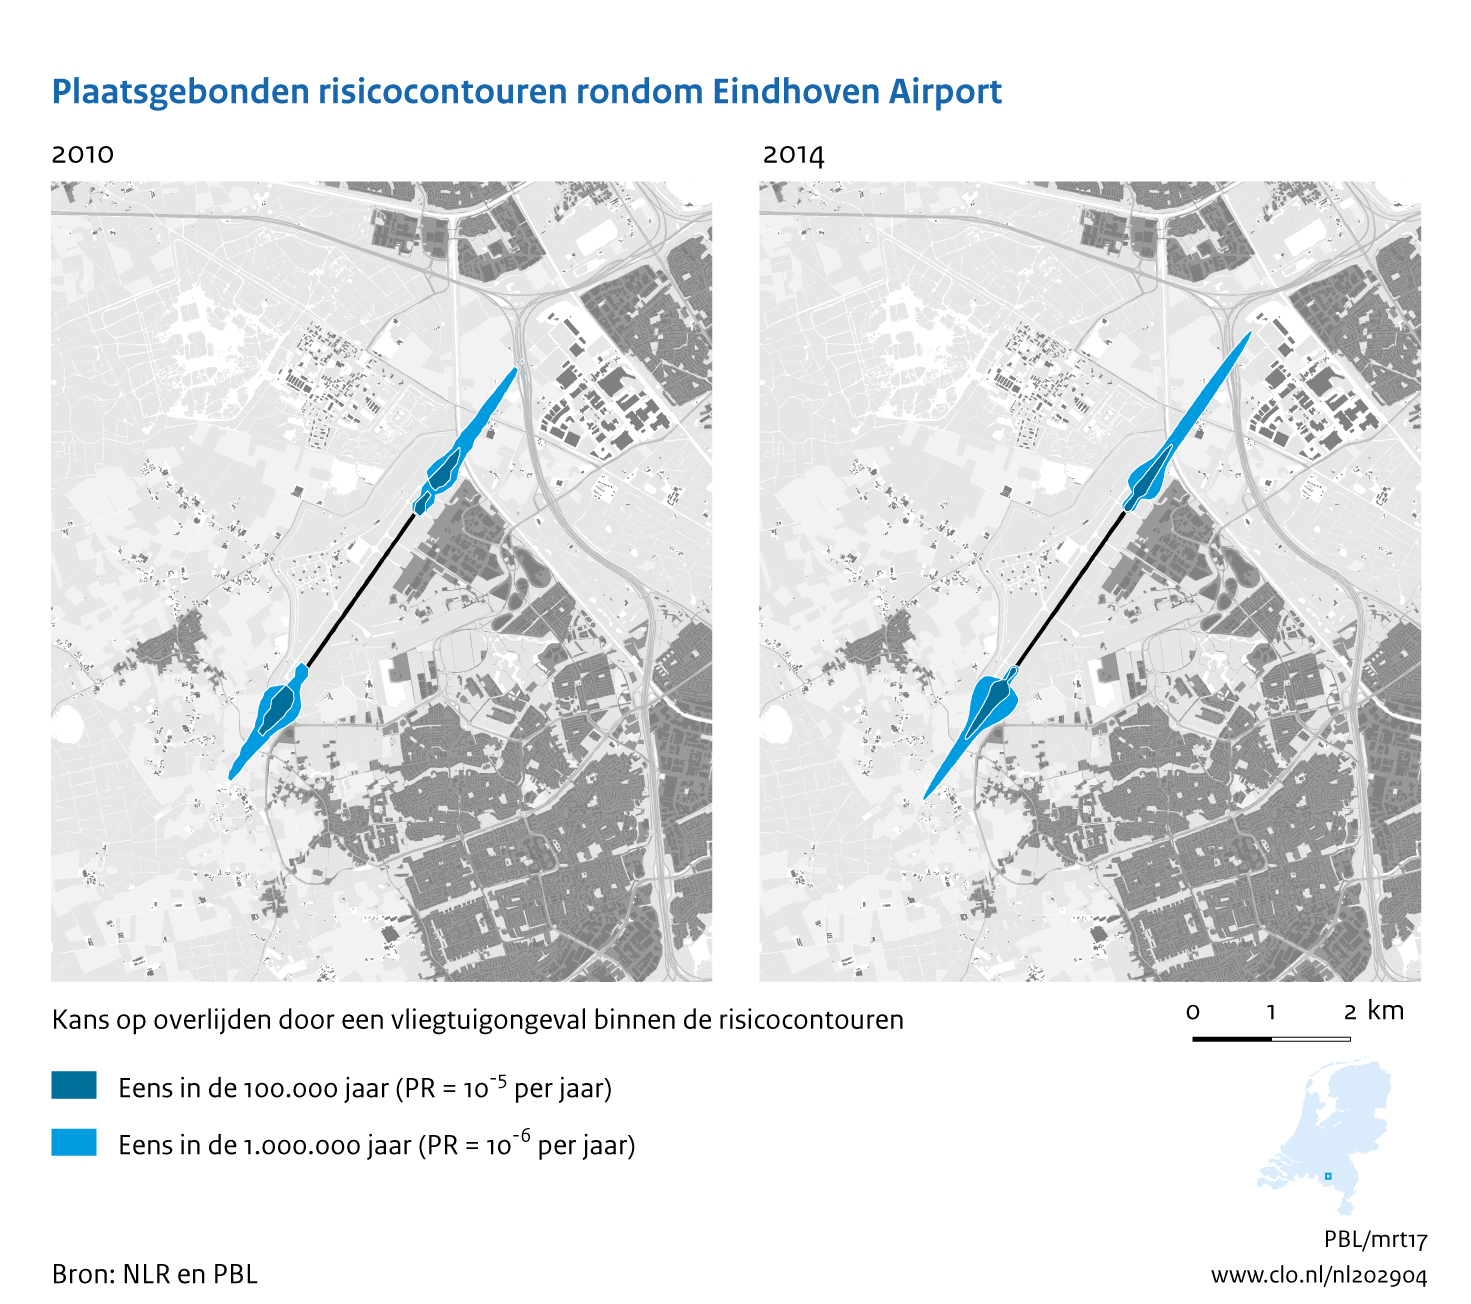 Figuur Plaatsgebonden risicocontouren rondom Eindhoven Airport, 2010-2014. In de rest van de tekst wordt deze figuur uitgebreider uitgelegd.